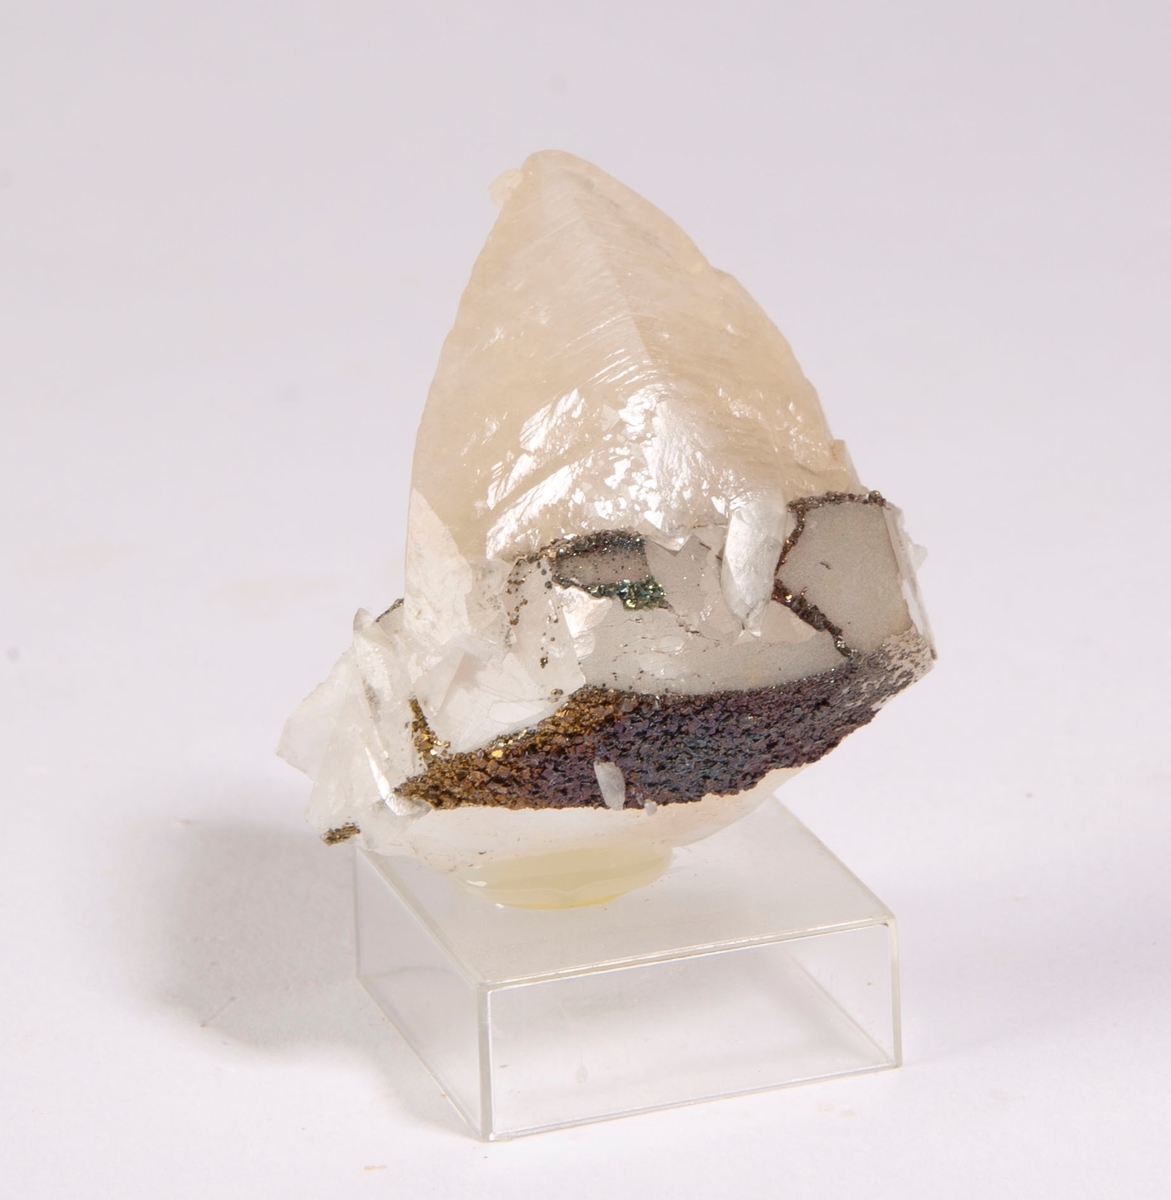 "Dog-tooth" krystall av kalsitt (3 cm lang) som påvekst på fragment av diskosformet krystall av kalsitt. Den tidligste generasjonen av kalsitt ble overvokst av pyritt før veksten av den seneste generasjonen av kalsitt.
Mildigkeit Gottes gruve, 84 m.